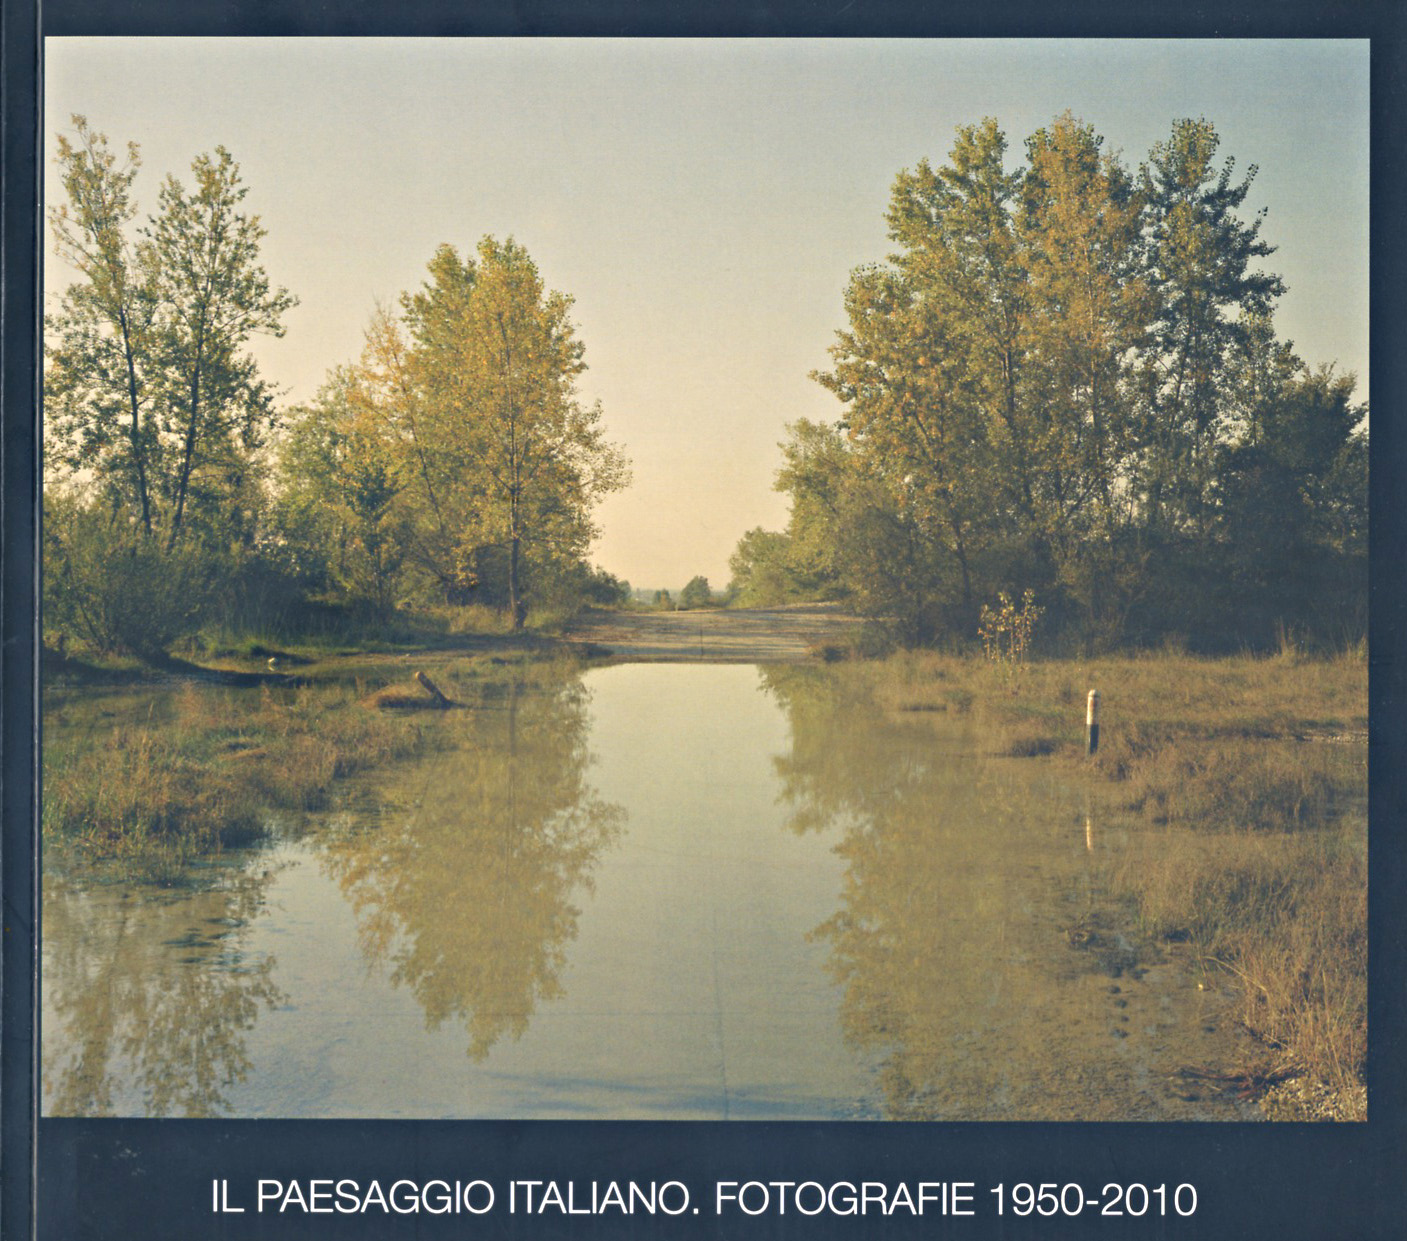 Il Paesaggio Italiano. Fotografie 1950-2010